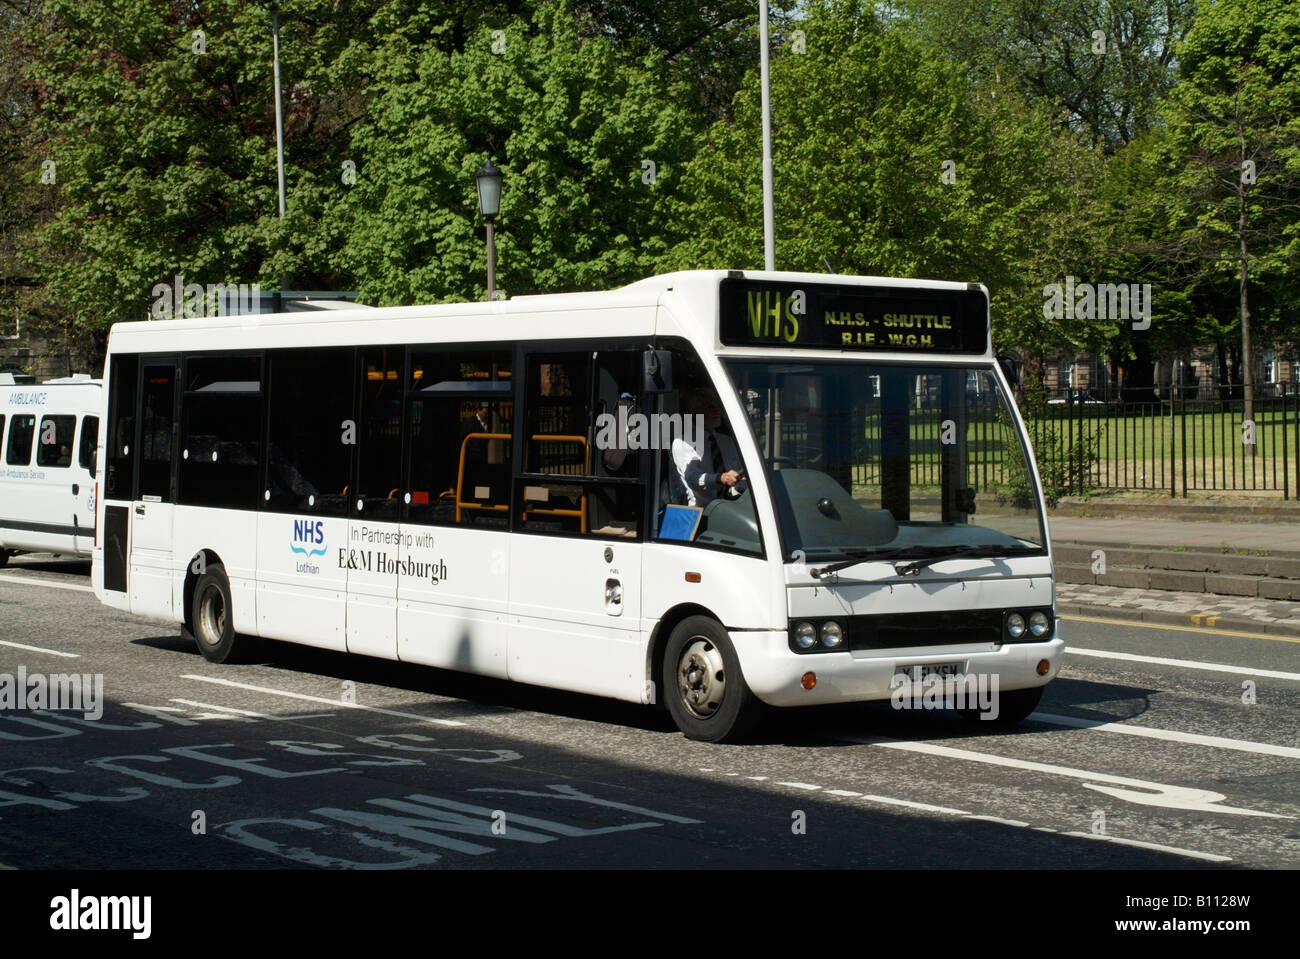 An NHS shuttle bus in Edinburgh Stock Photo